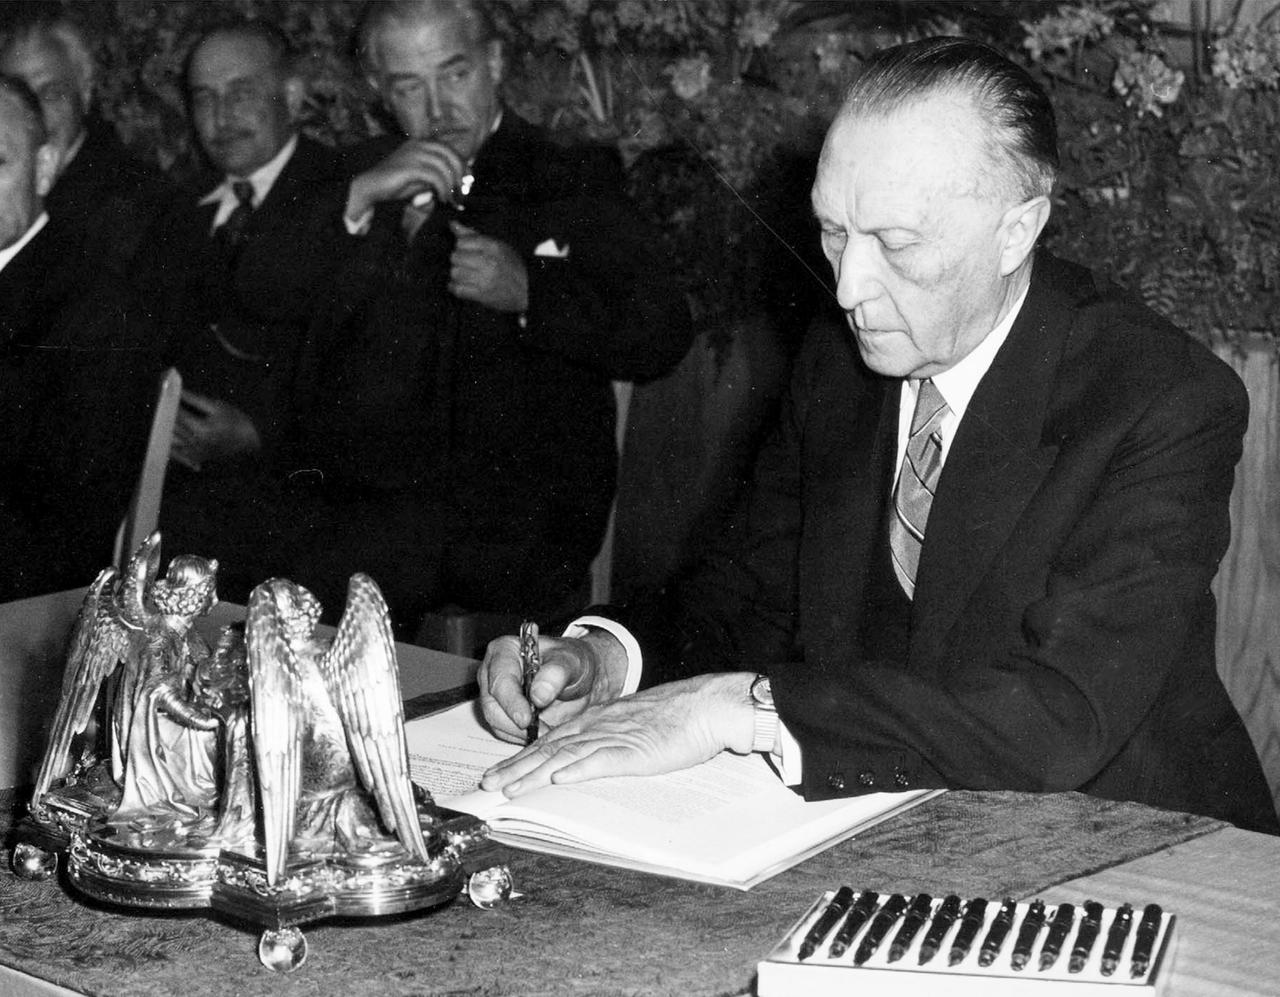 Konrad Adenauer bei der Unterzeichnung des Grundgesetzes am 23. Mai 1949